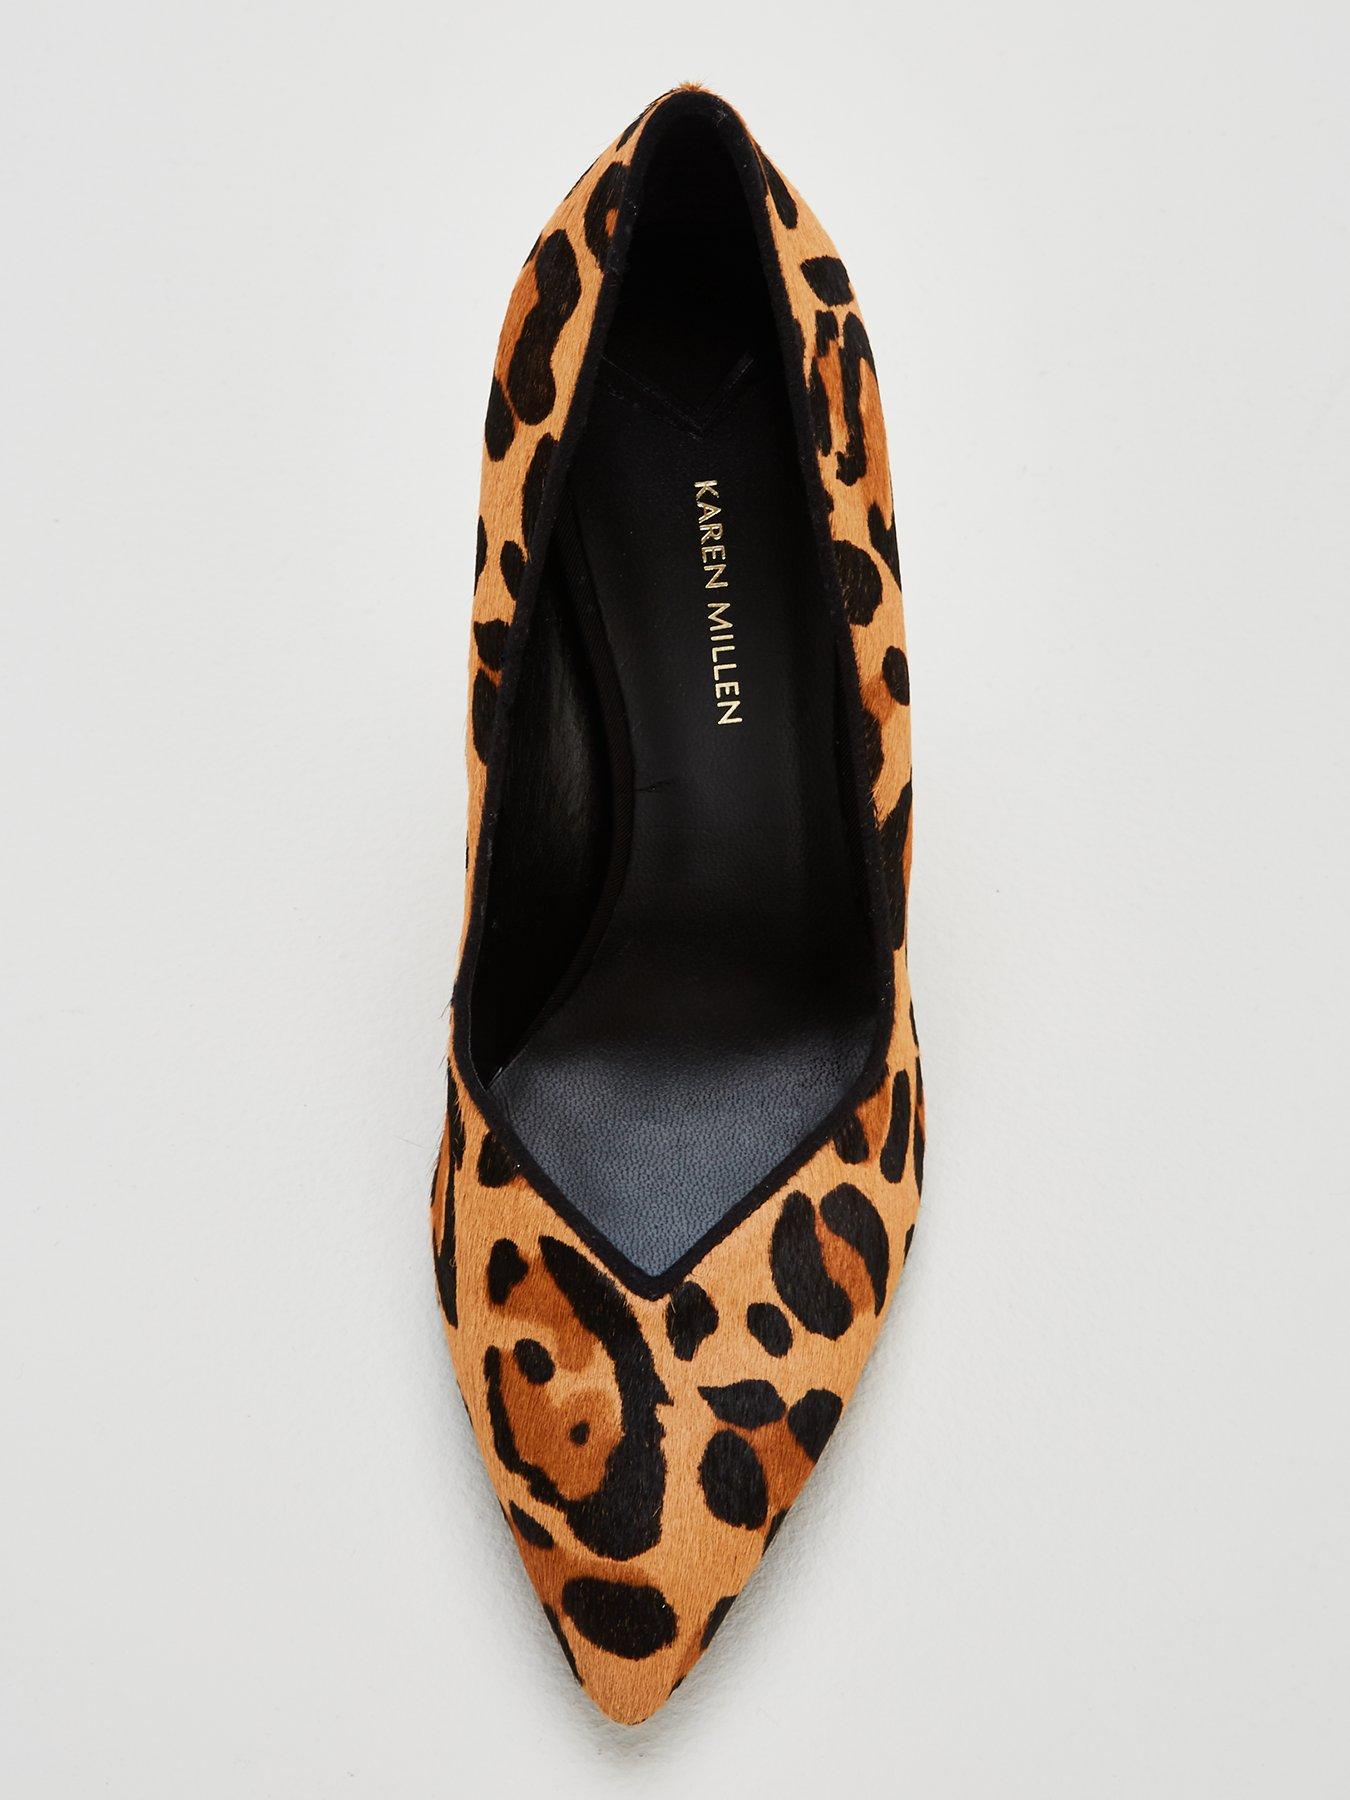 karen millen leopard print shoes